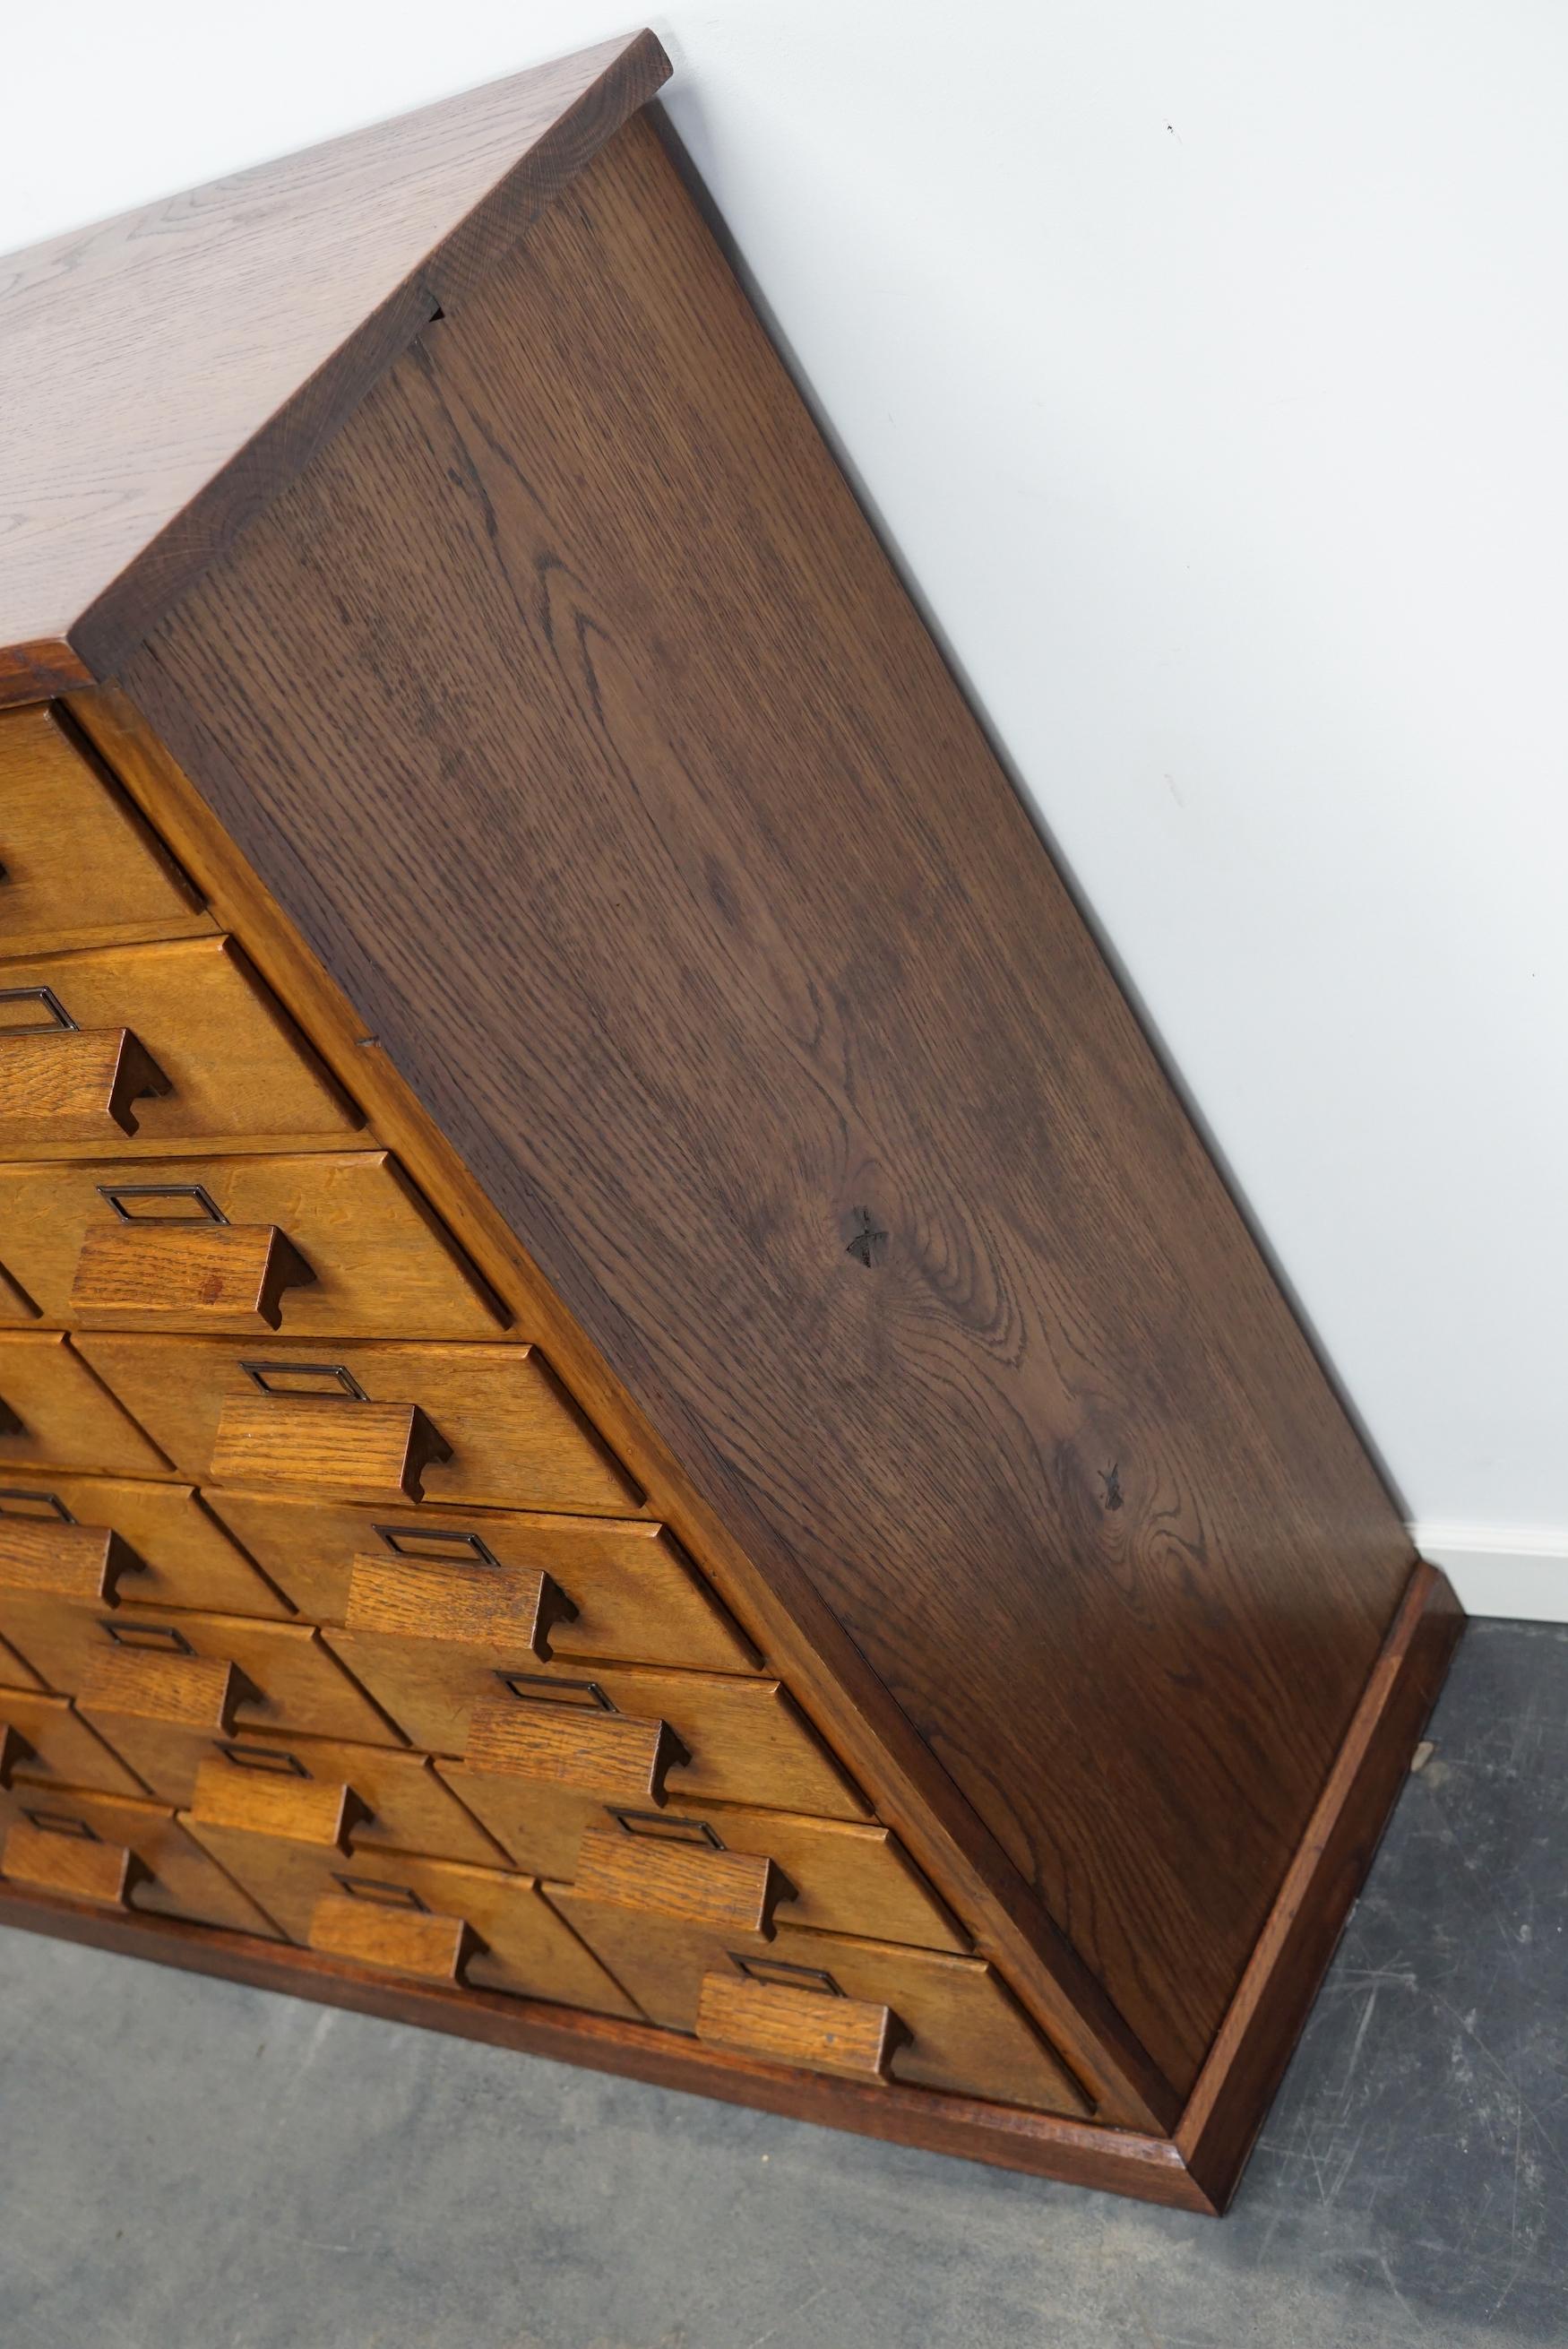 Dieser Apothekerschrank wurde um 1940 / 1950 in Deutschland aus Eiche gefertigt. Er verfügt über 32 Schubladen mit schönen Holzgriffen und Namenskartenhaltern. Die Innenmaße der Schubladen sind: DWH 35 x 27 x 7,5 cm.